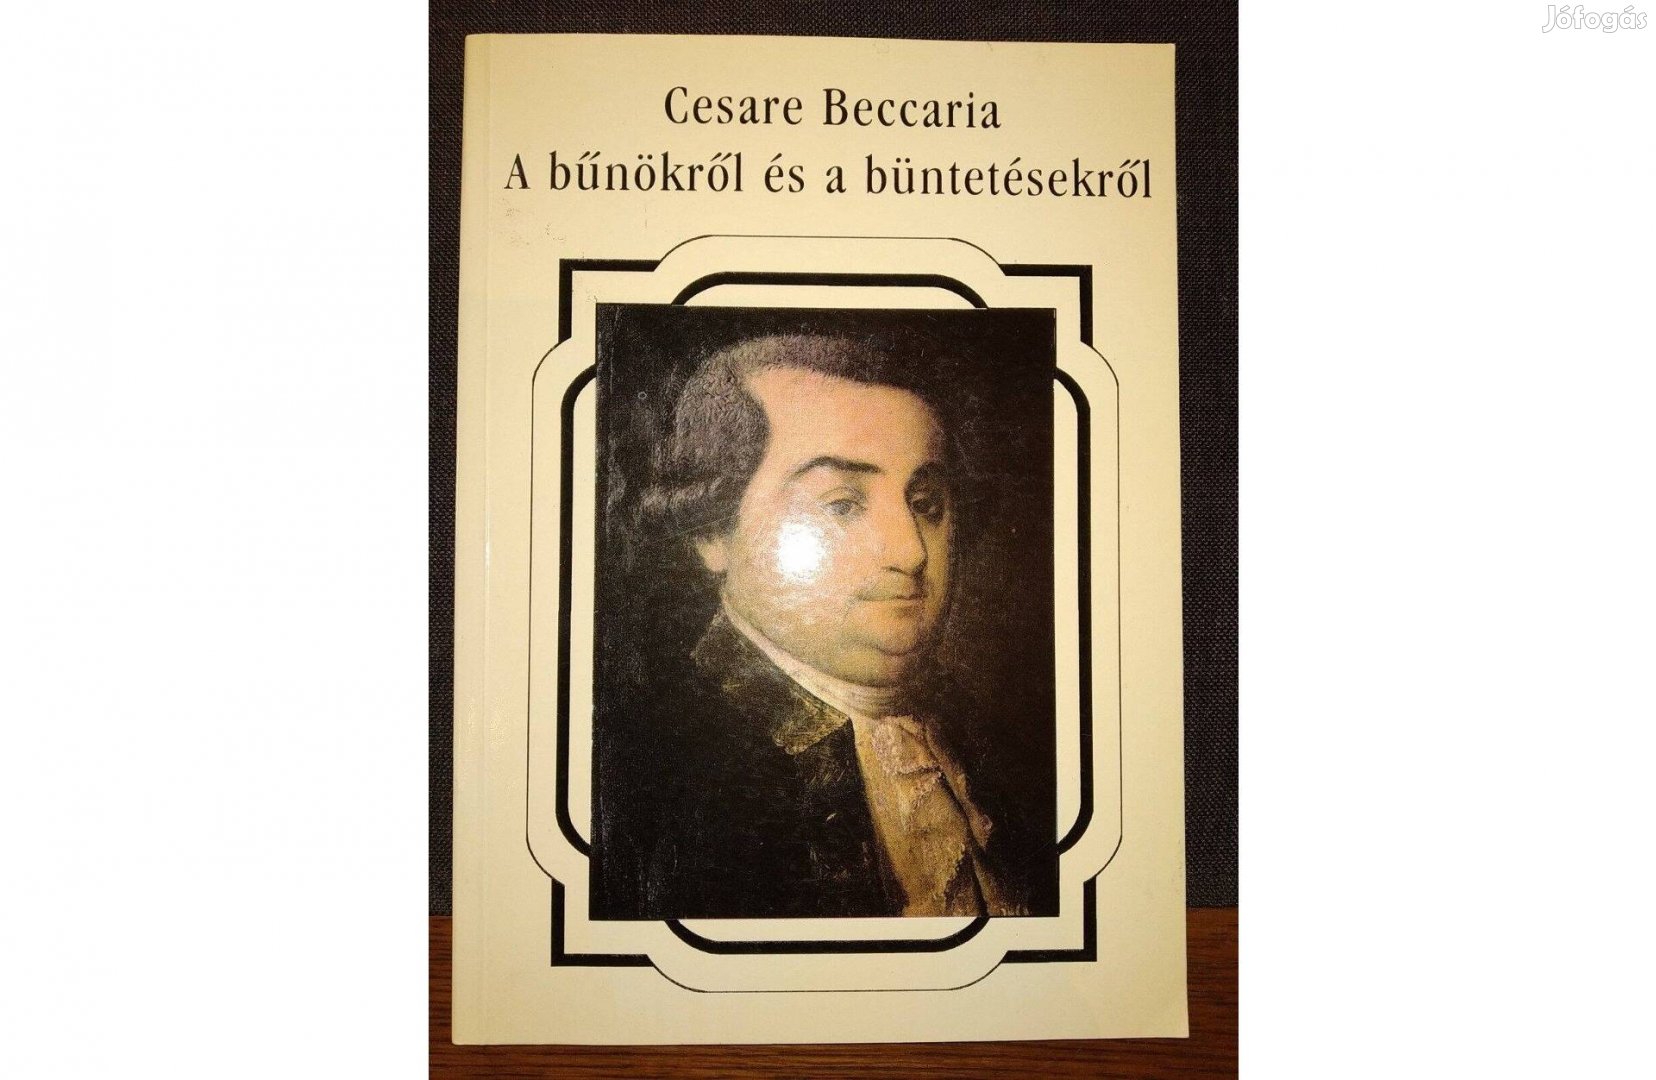 A bűnökről és a büntetésekről Casare Beccaria